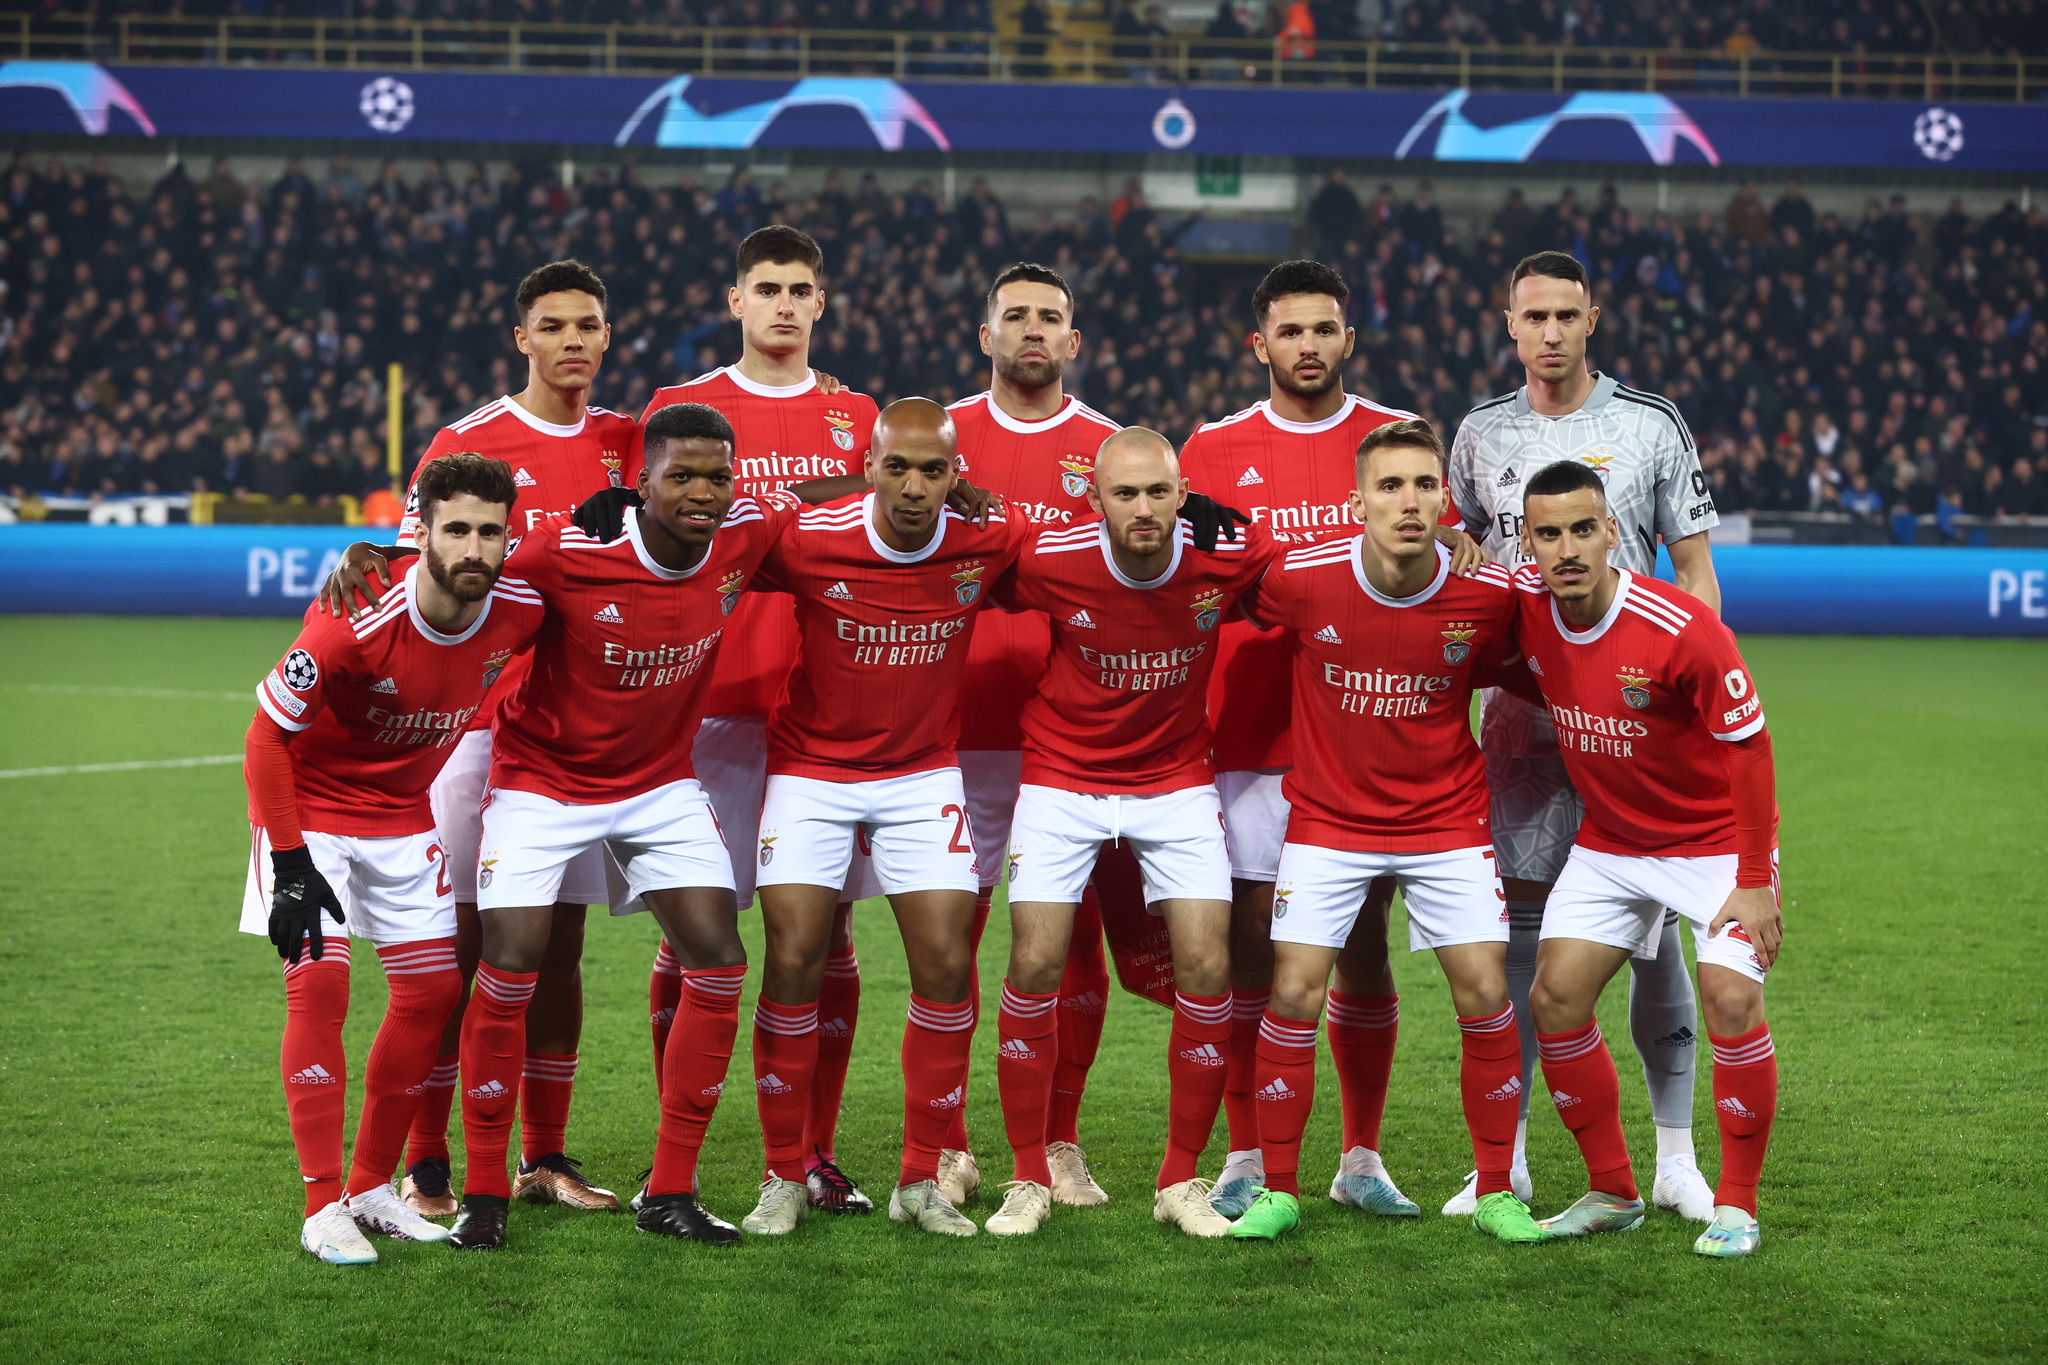 El once titular del Benfica en el día de hoy.